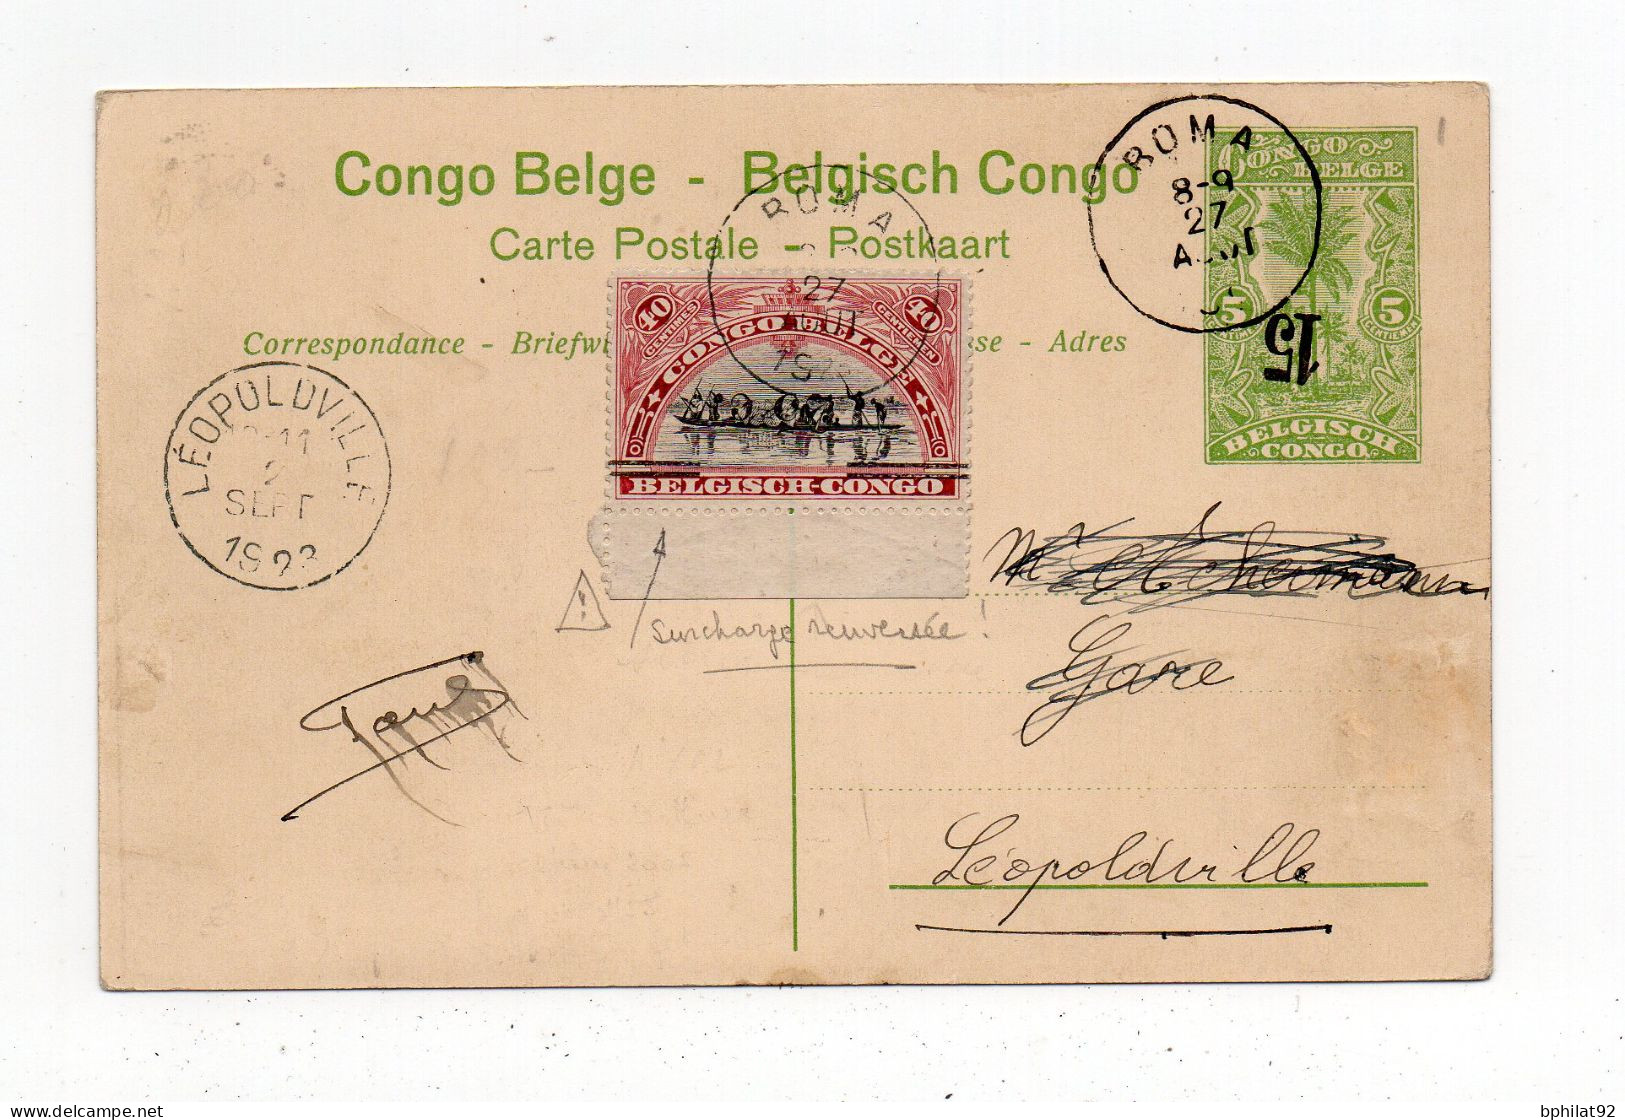 !!! CONGO BELGE, TIMBRE AVEC SURCH RENVERSEE SUR ENTIER POSTAL DE 1923 - Brieven En Documenten